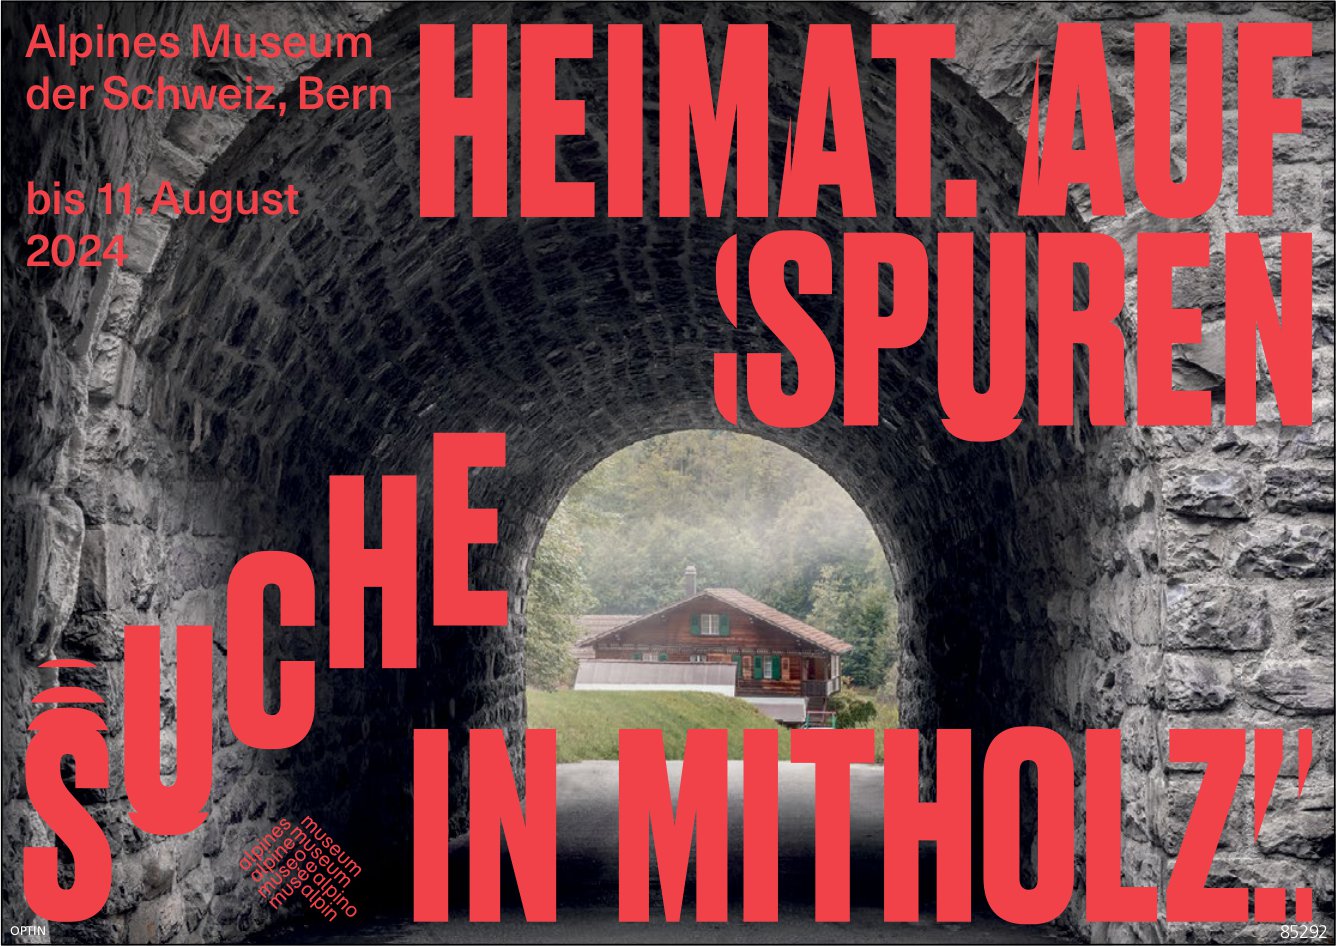 Alpines Museum der Schweiz, Bern - Heimat aufspüren, Suche in Mitholz,  bis 11. August